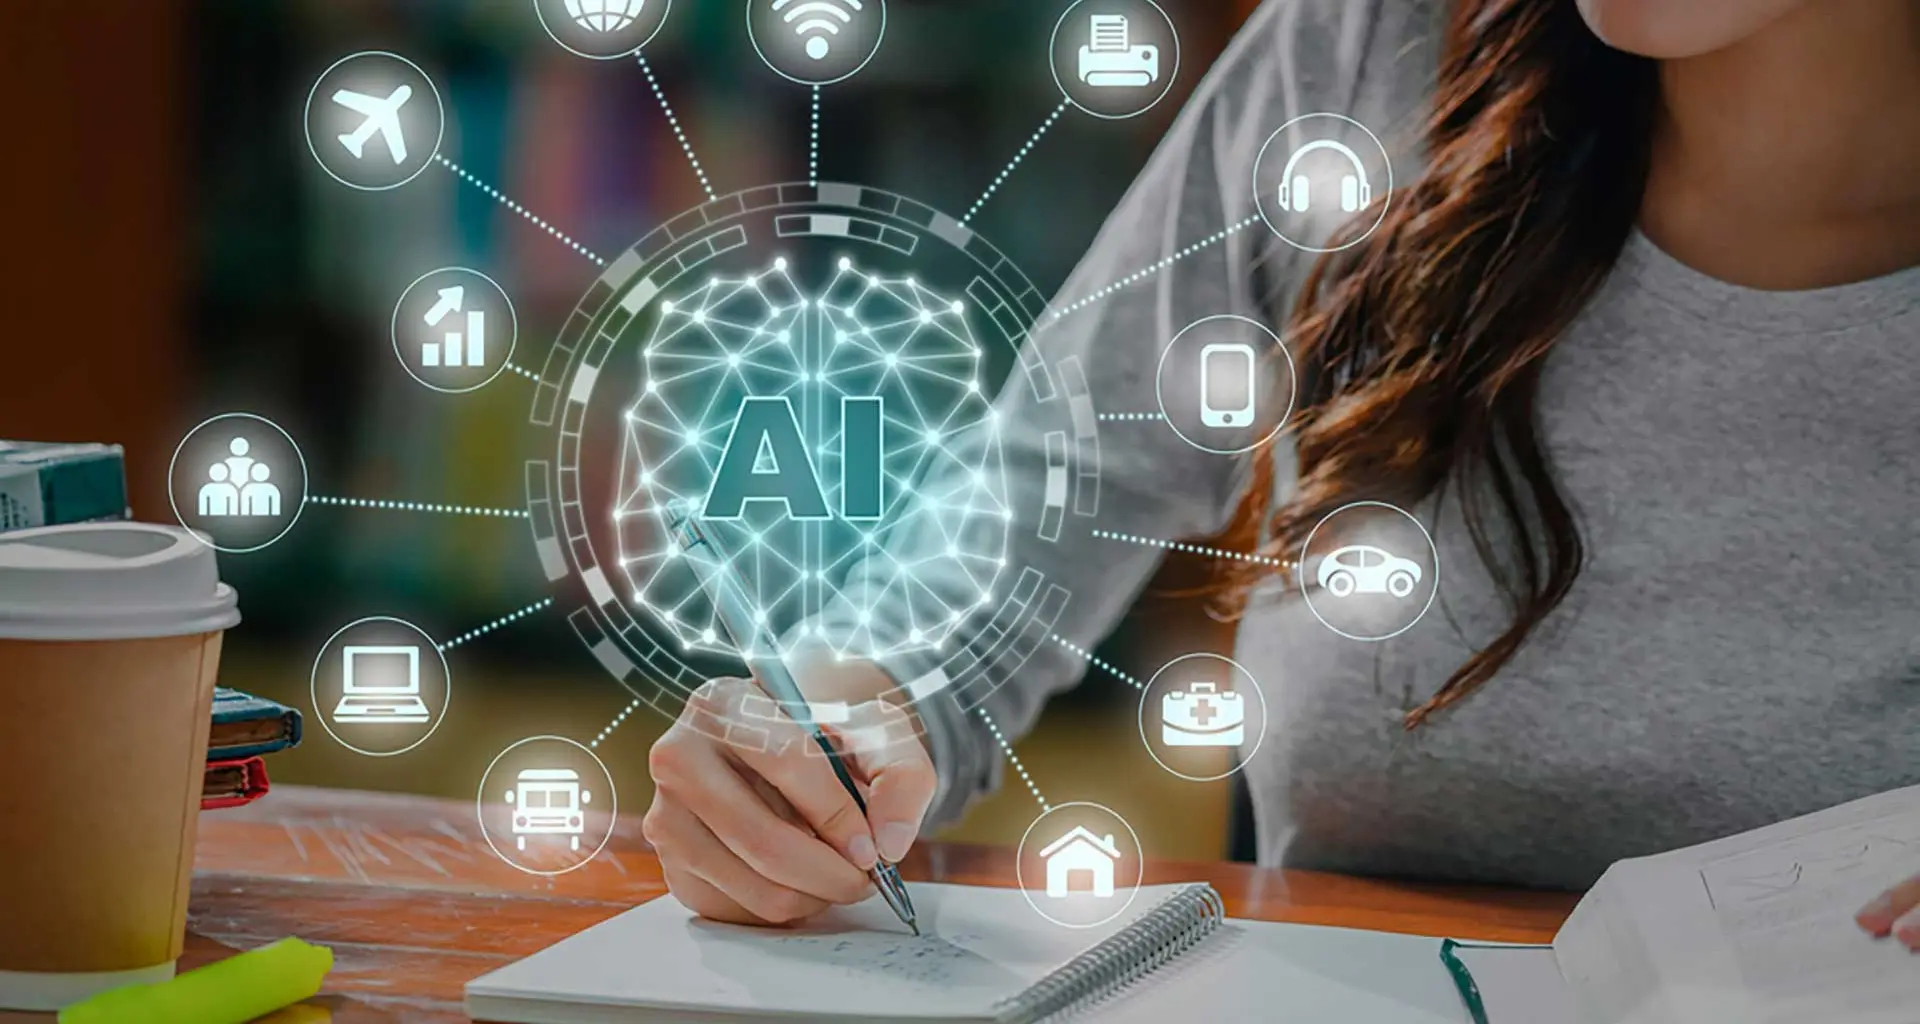 herramientas de inteligencia artificial para estudiantes - Cuál es la IA más popular entre los estudiantes